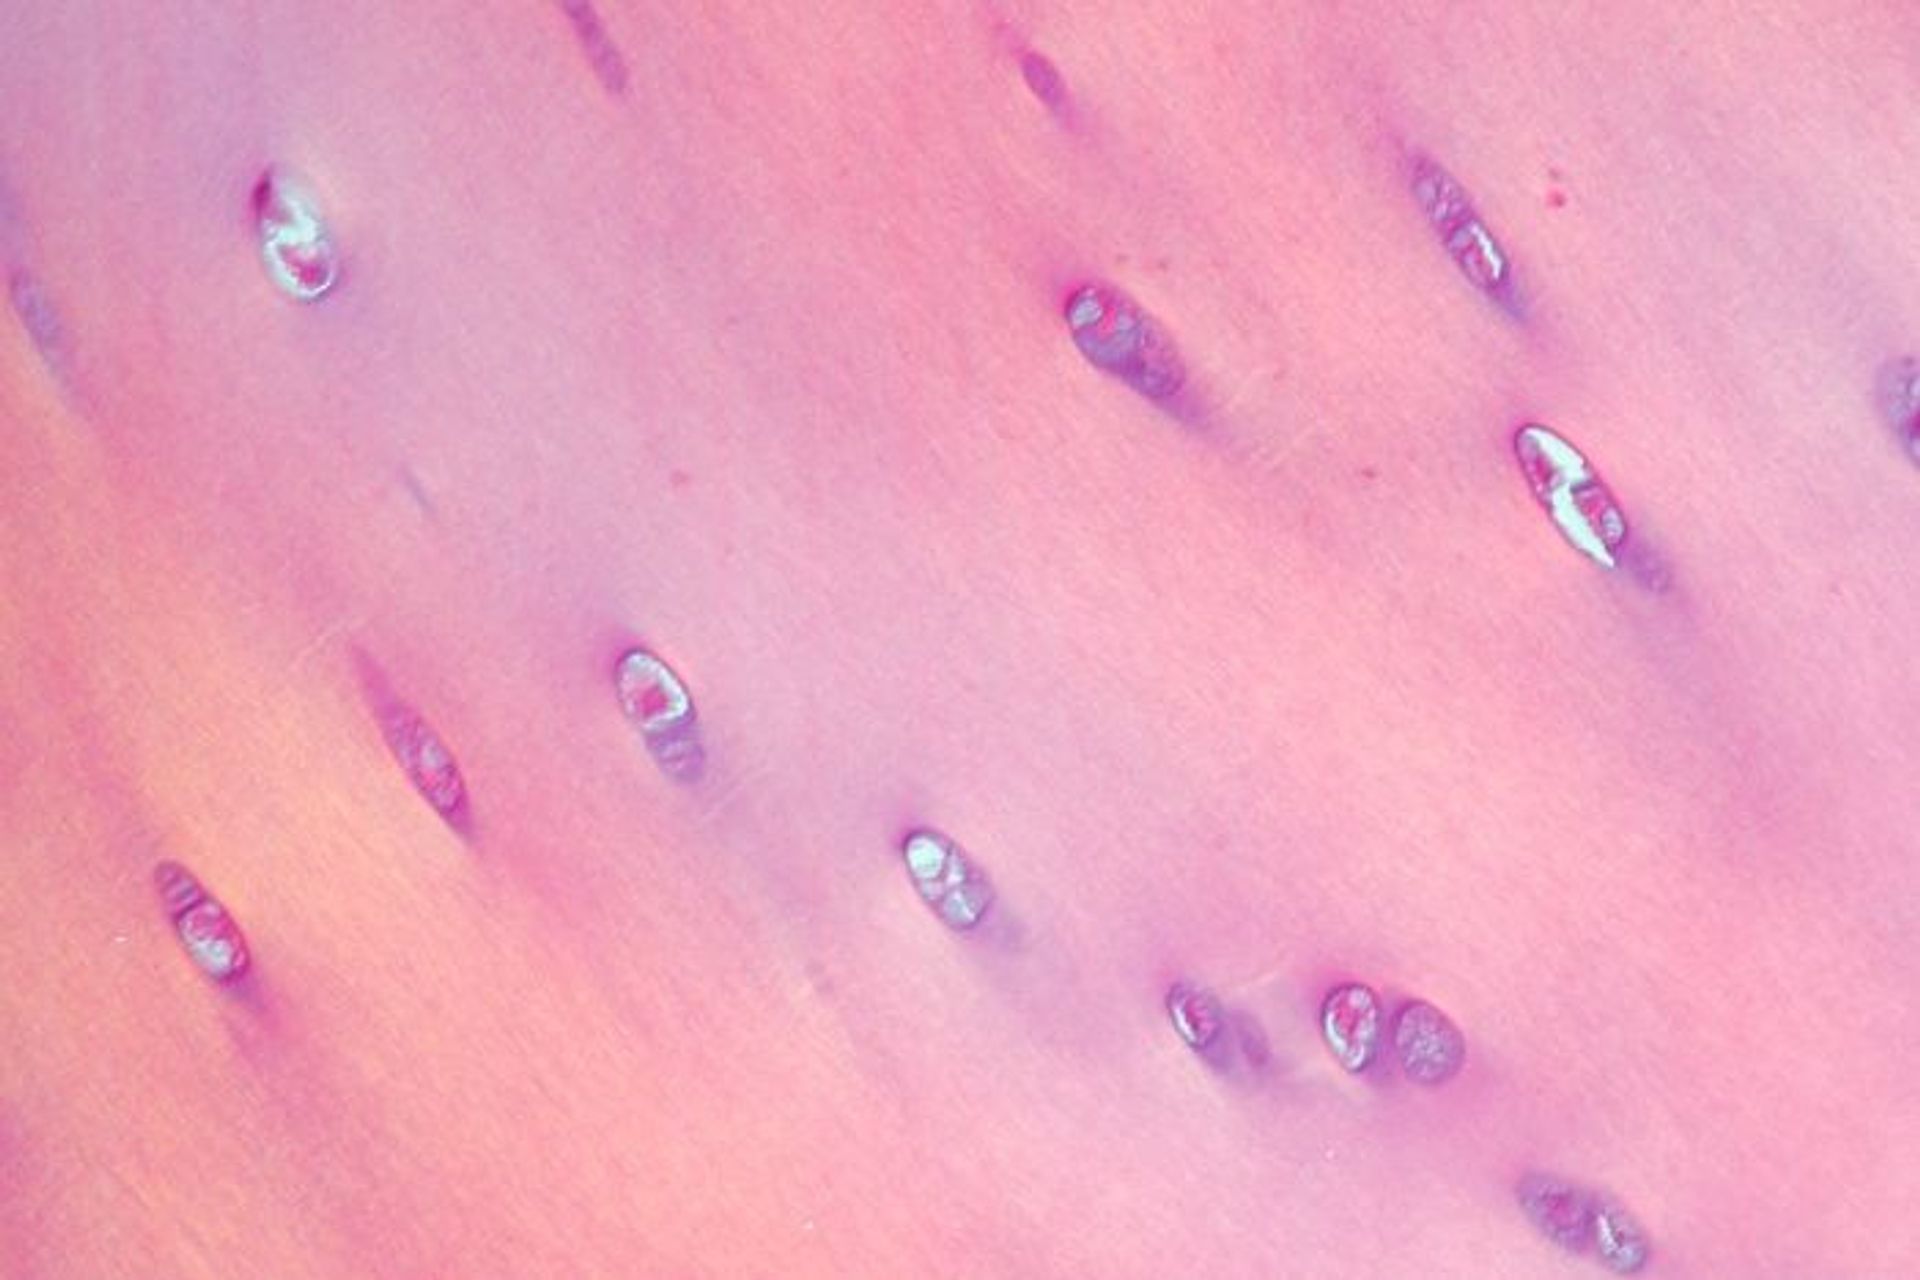 Immagine istologica di cartilagine ialina colorata con ematossilina ed eosina, sottoposta a un fascio di luce polarizzata